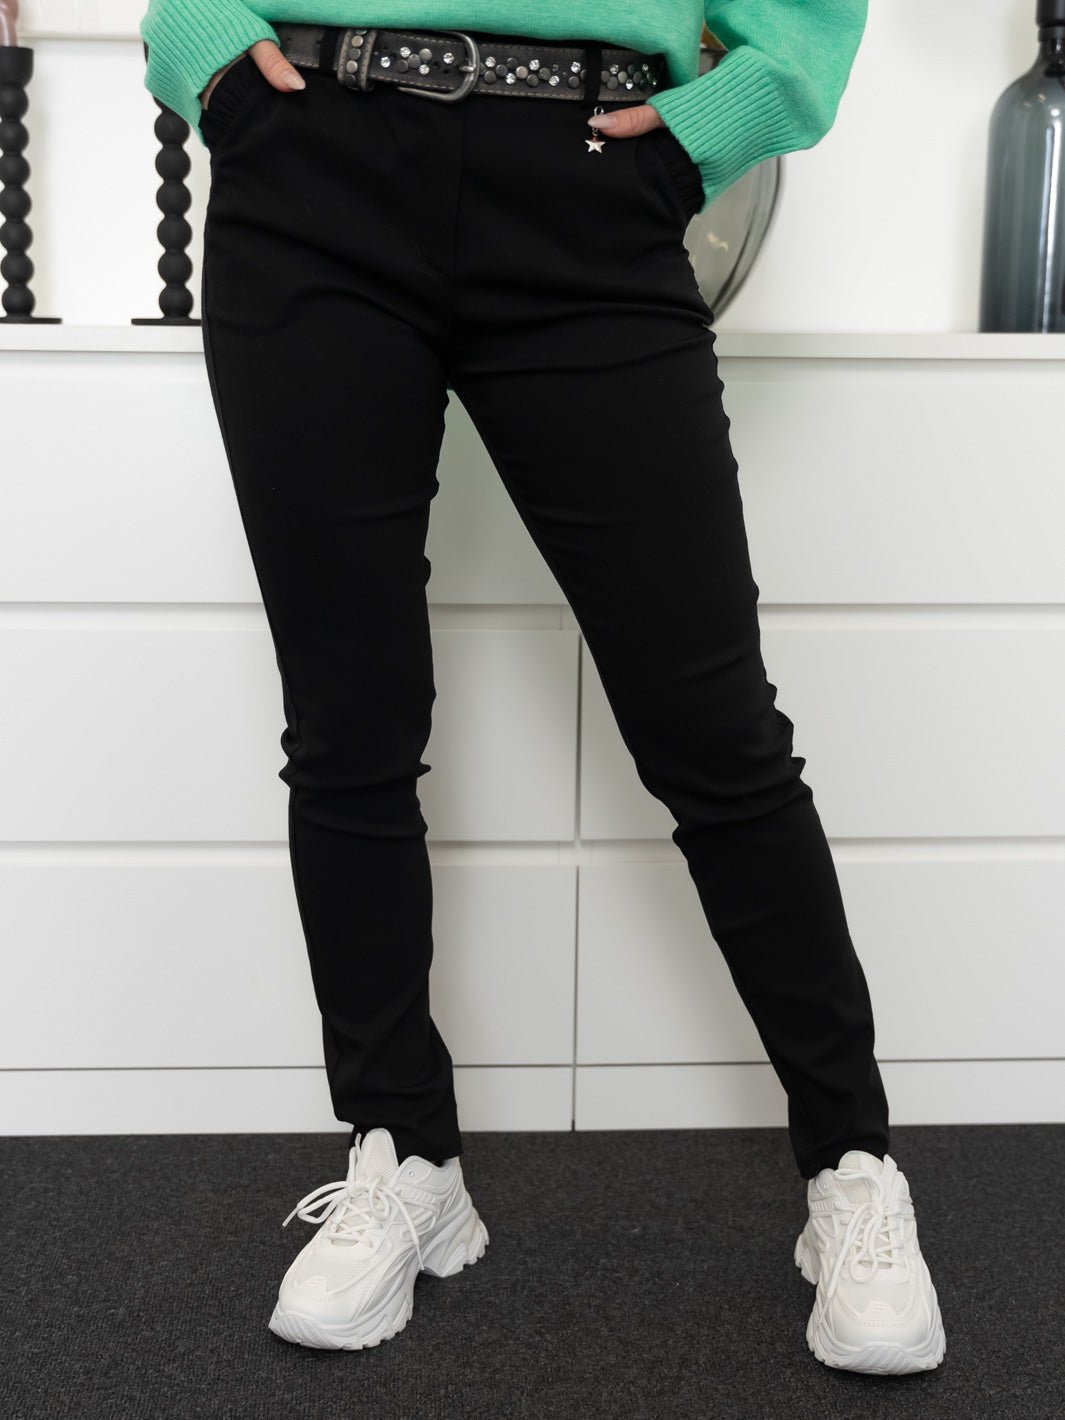 Fransa FXhinda pants black - Online-Mode